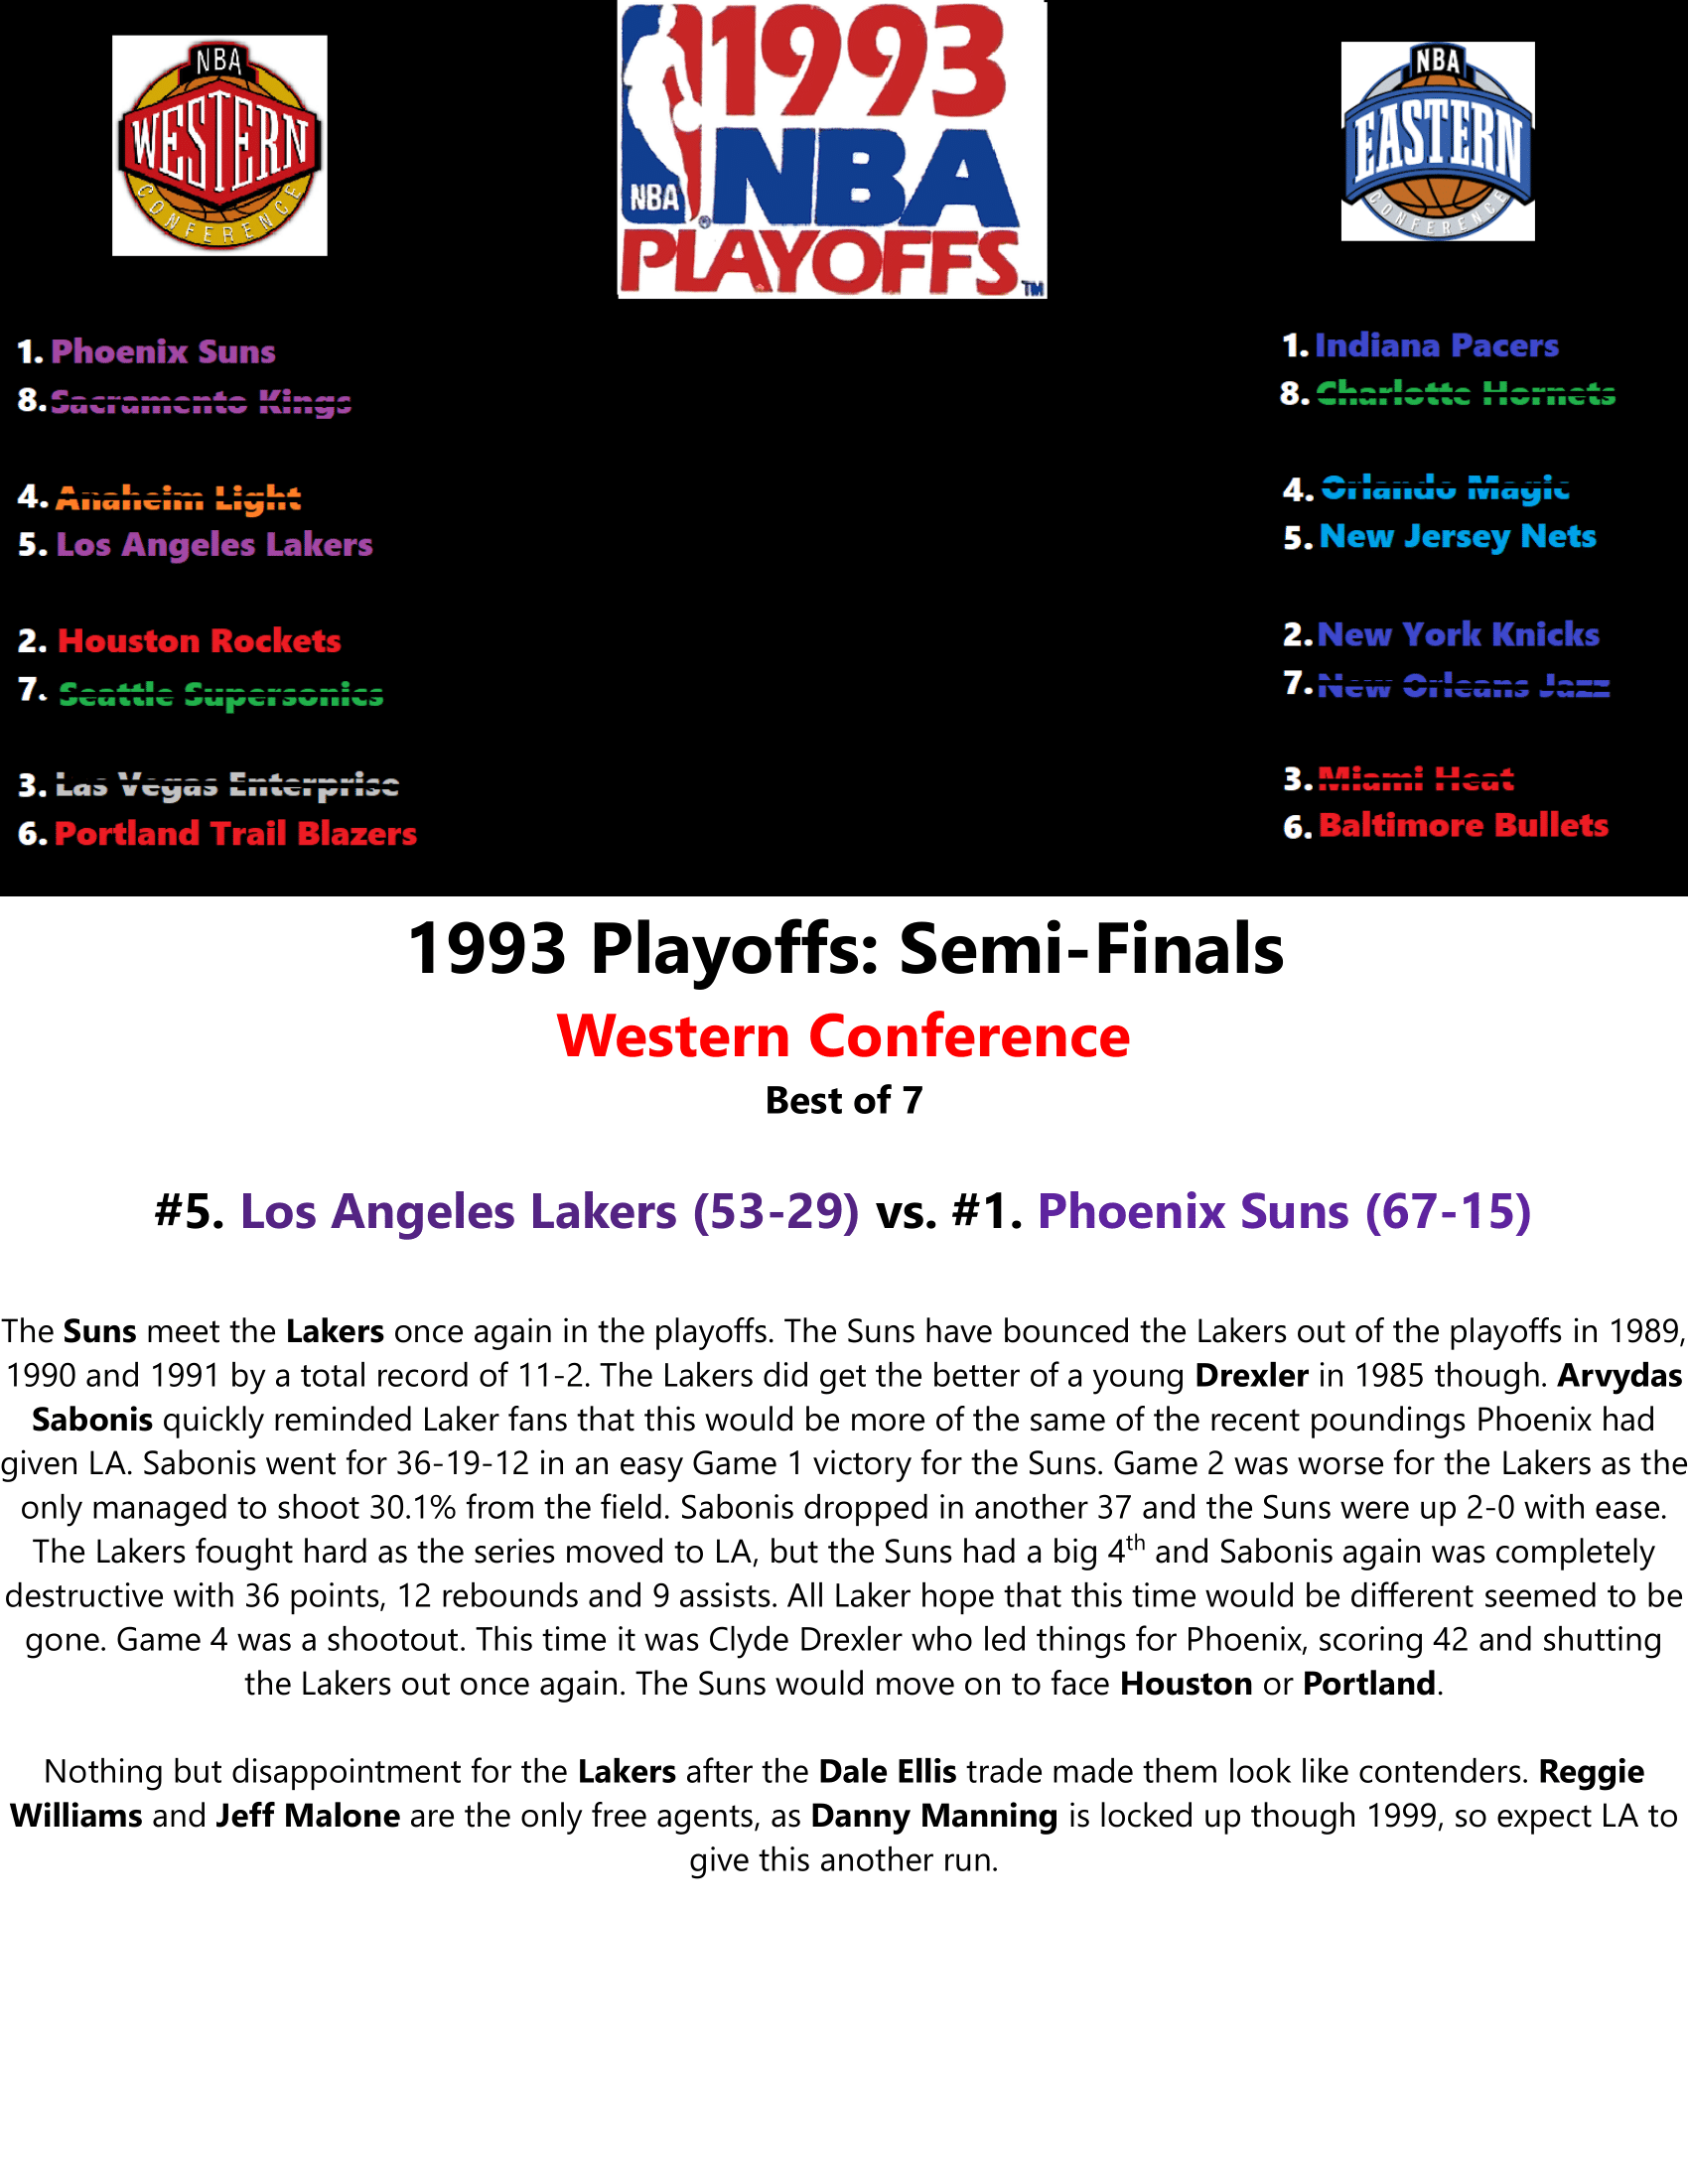 92-93-Part-5-NBA-Playoffs-14.png